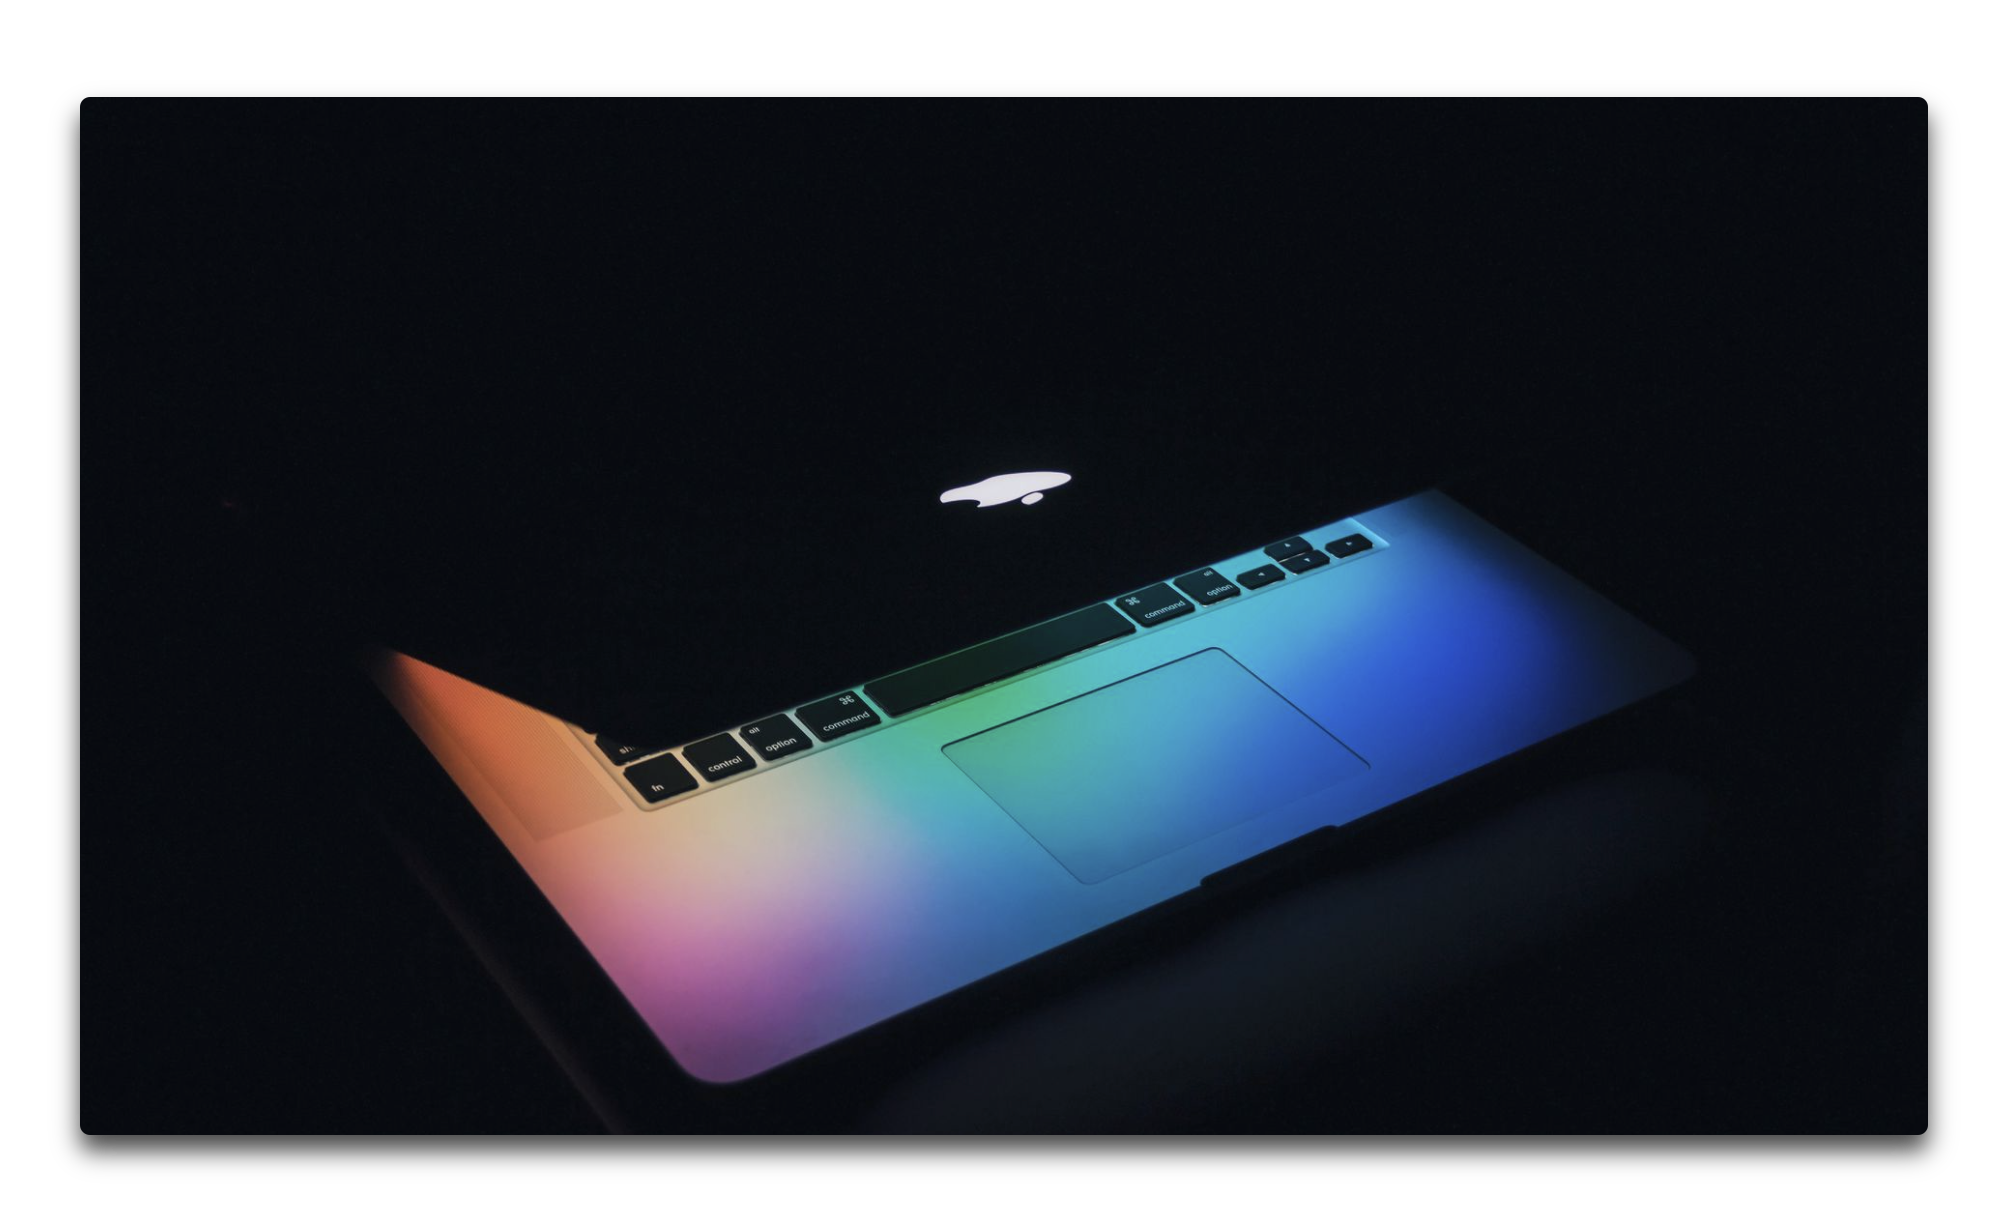 Appleは今年、iPadアプリをMacで動かすことを目指す